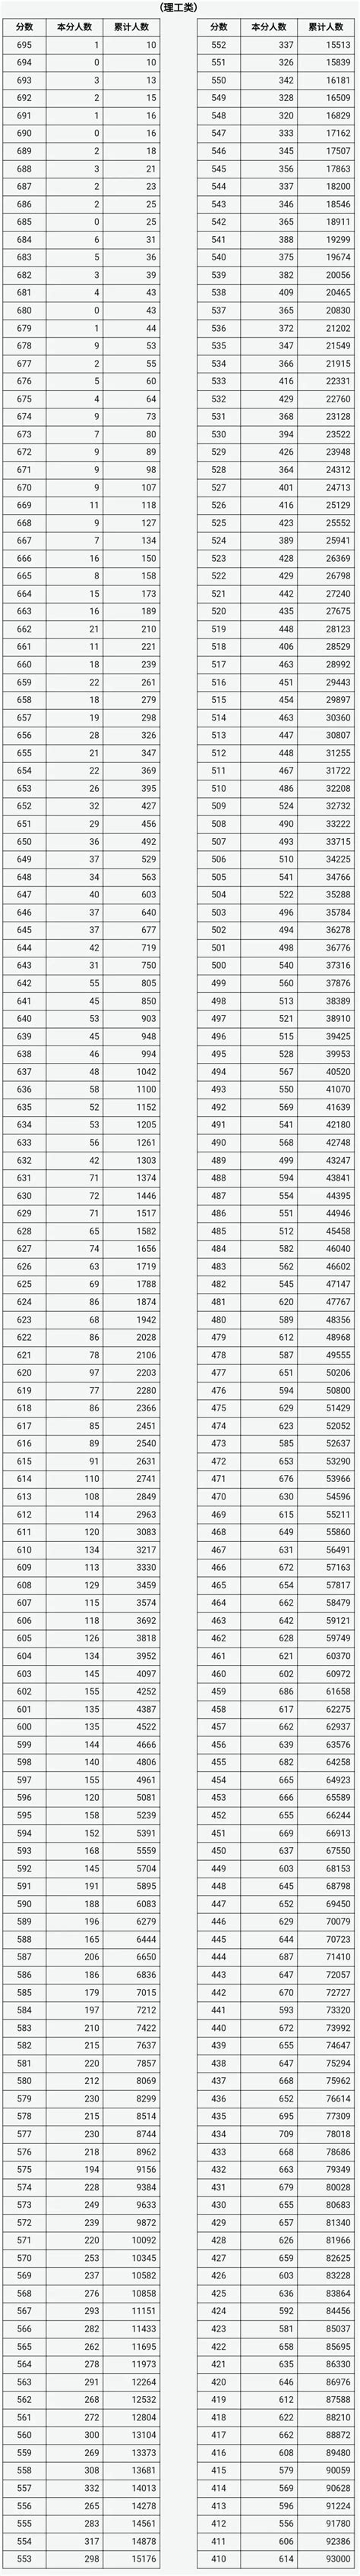 2021年山西省普通高考成绩一分一段统计表 - 晋城市人民政府